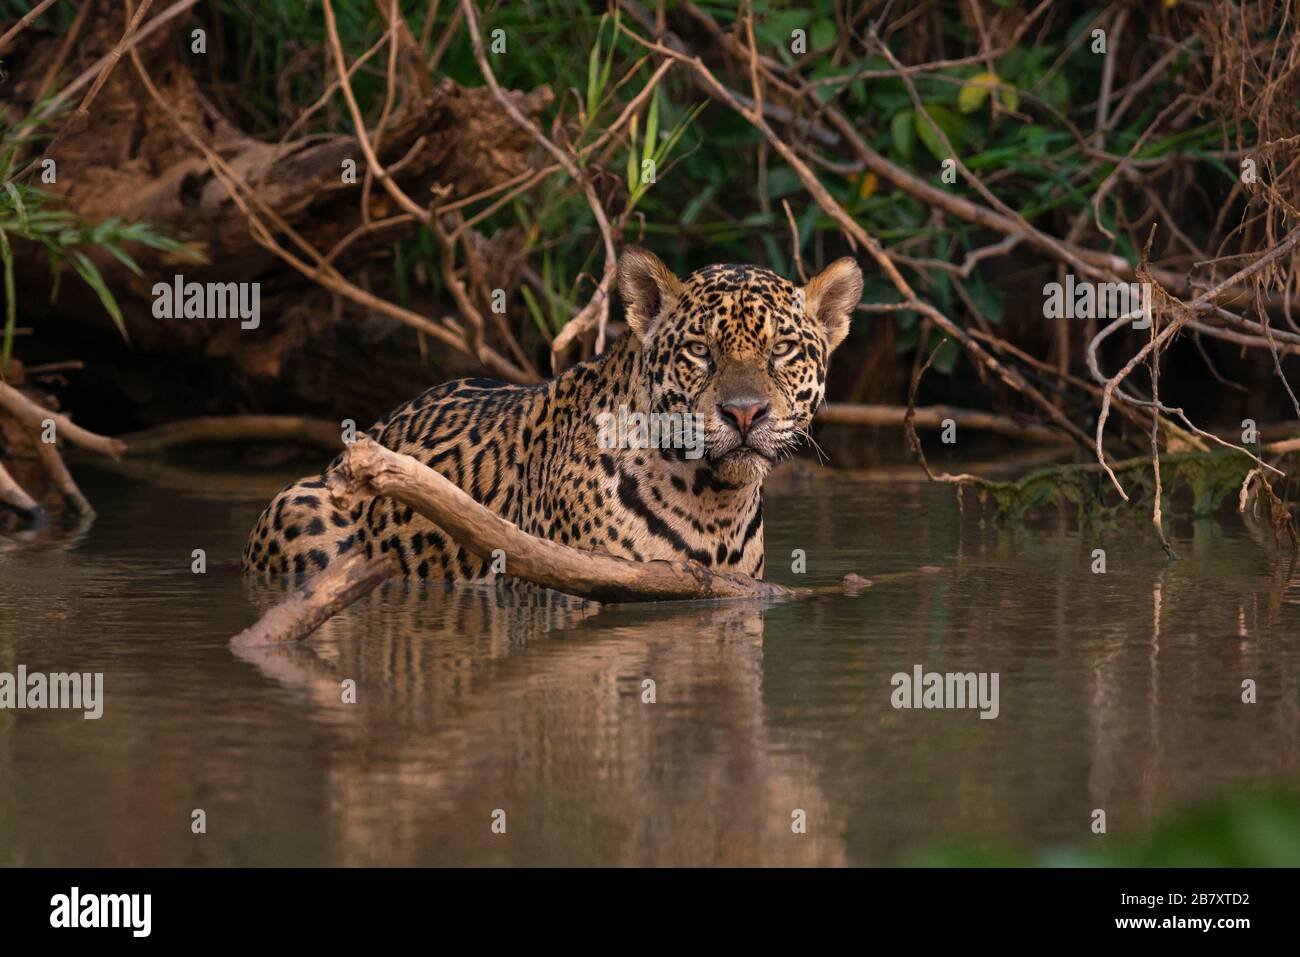 A Jaguar (Panthera onca) from the Pantanal, Brazil Stock Photo